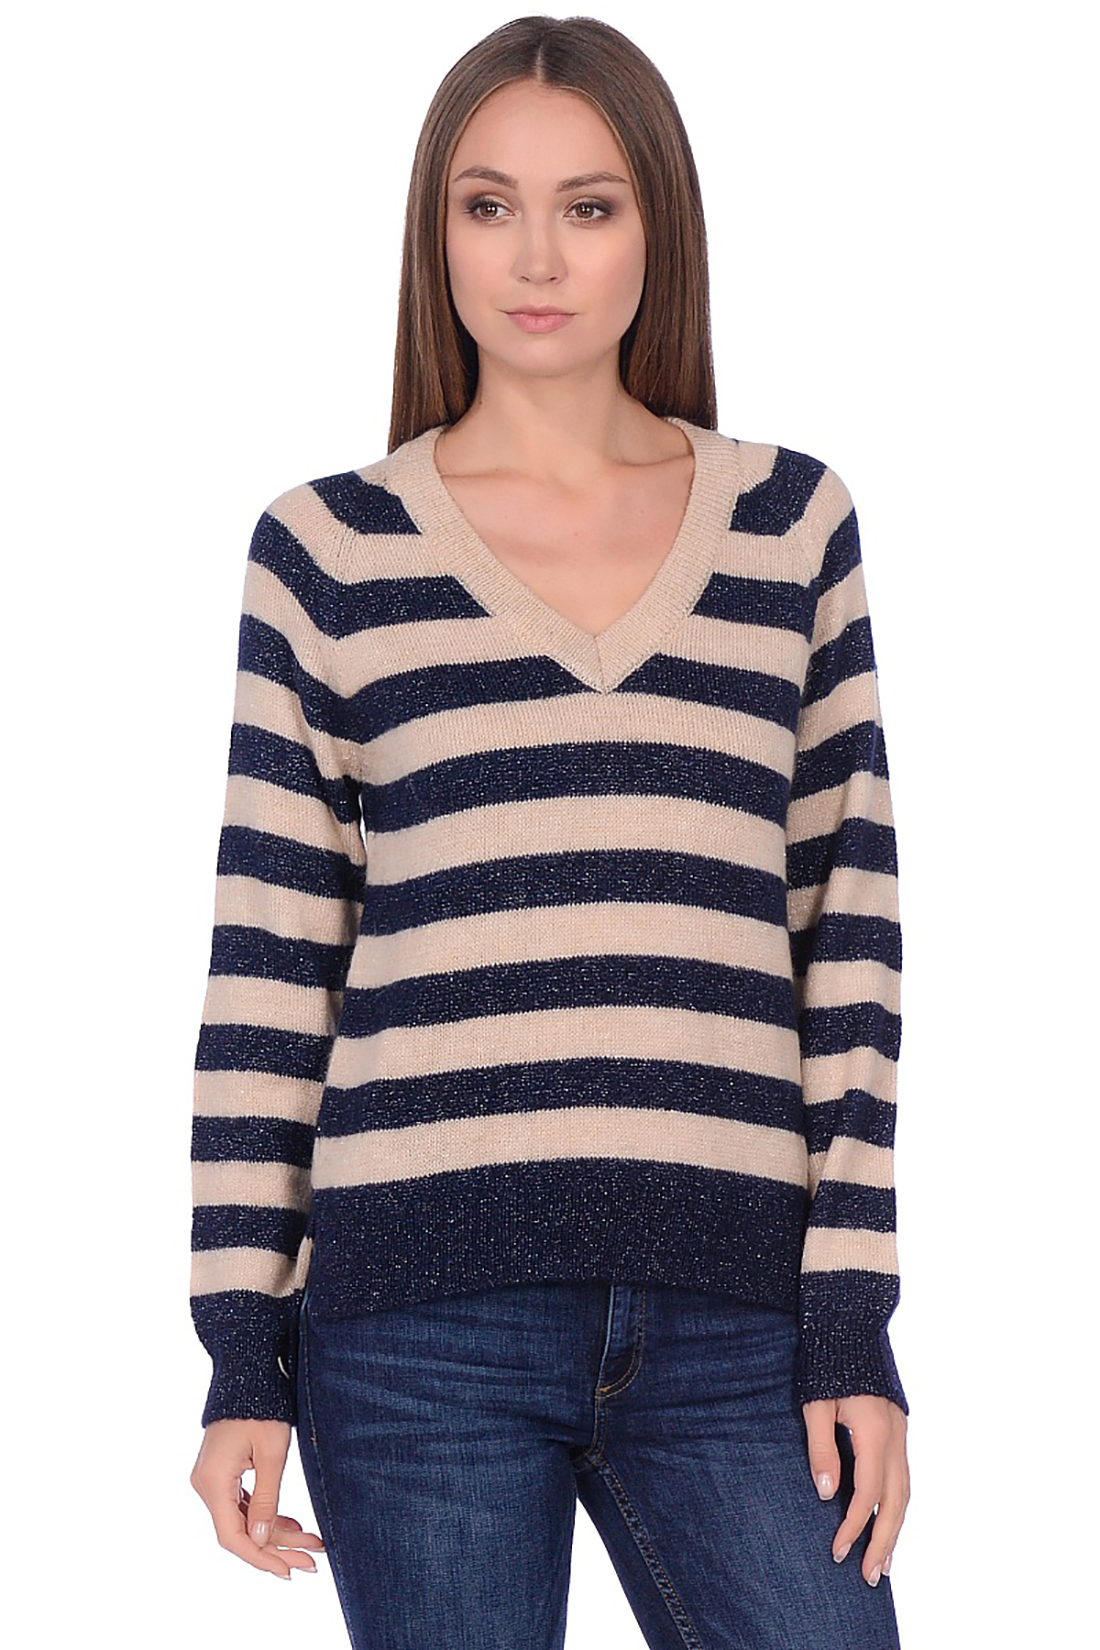 Пуловер с широкими полосами (арт. baon B139516), размер XXL, цвет синий Пуловер с широкими полосами (арт. baon B139516) - фото 1